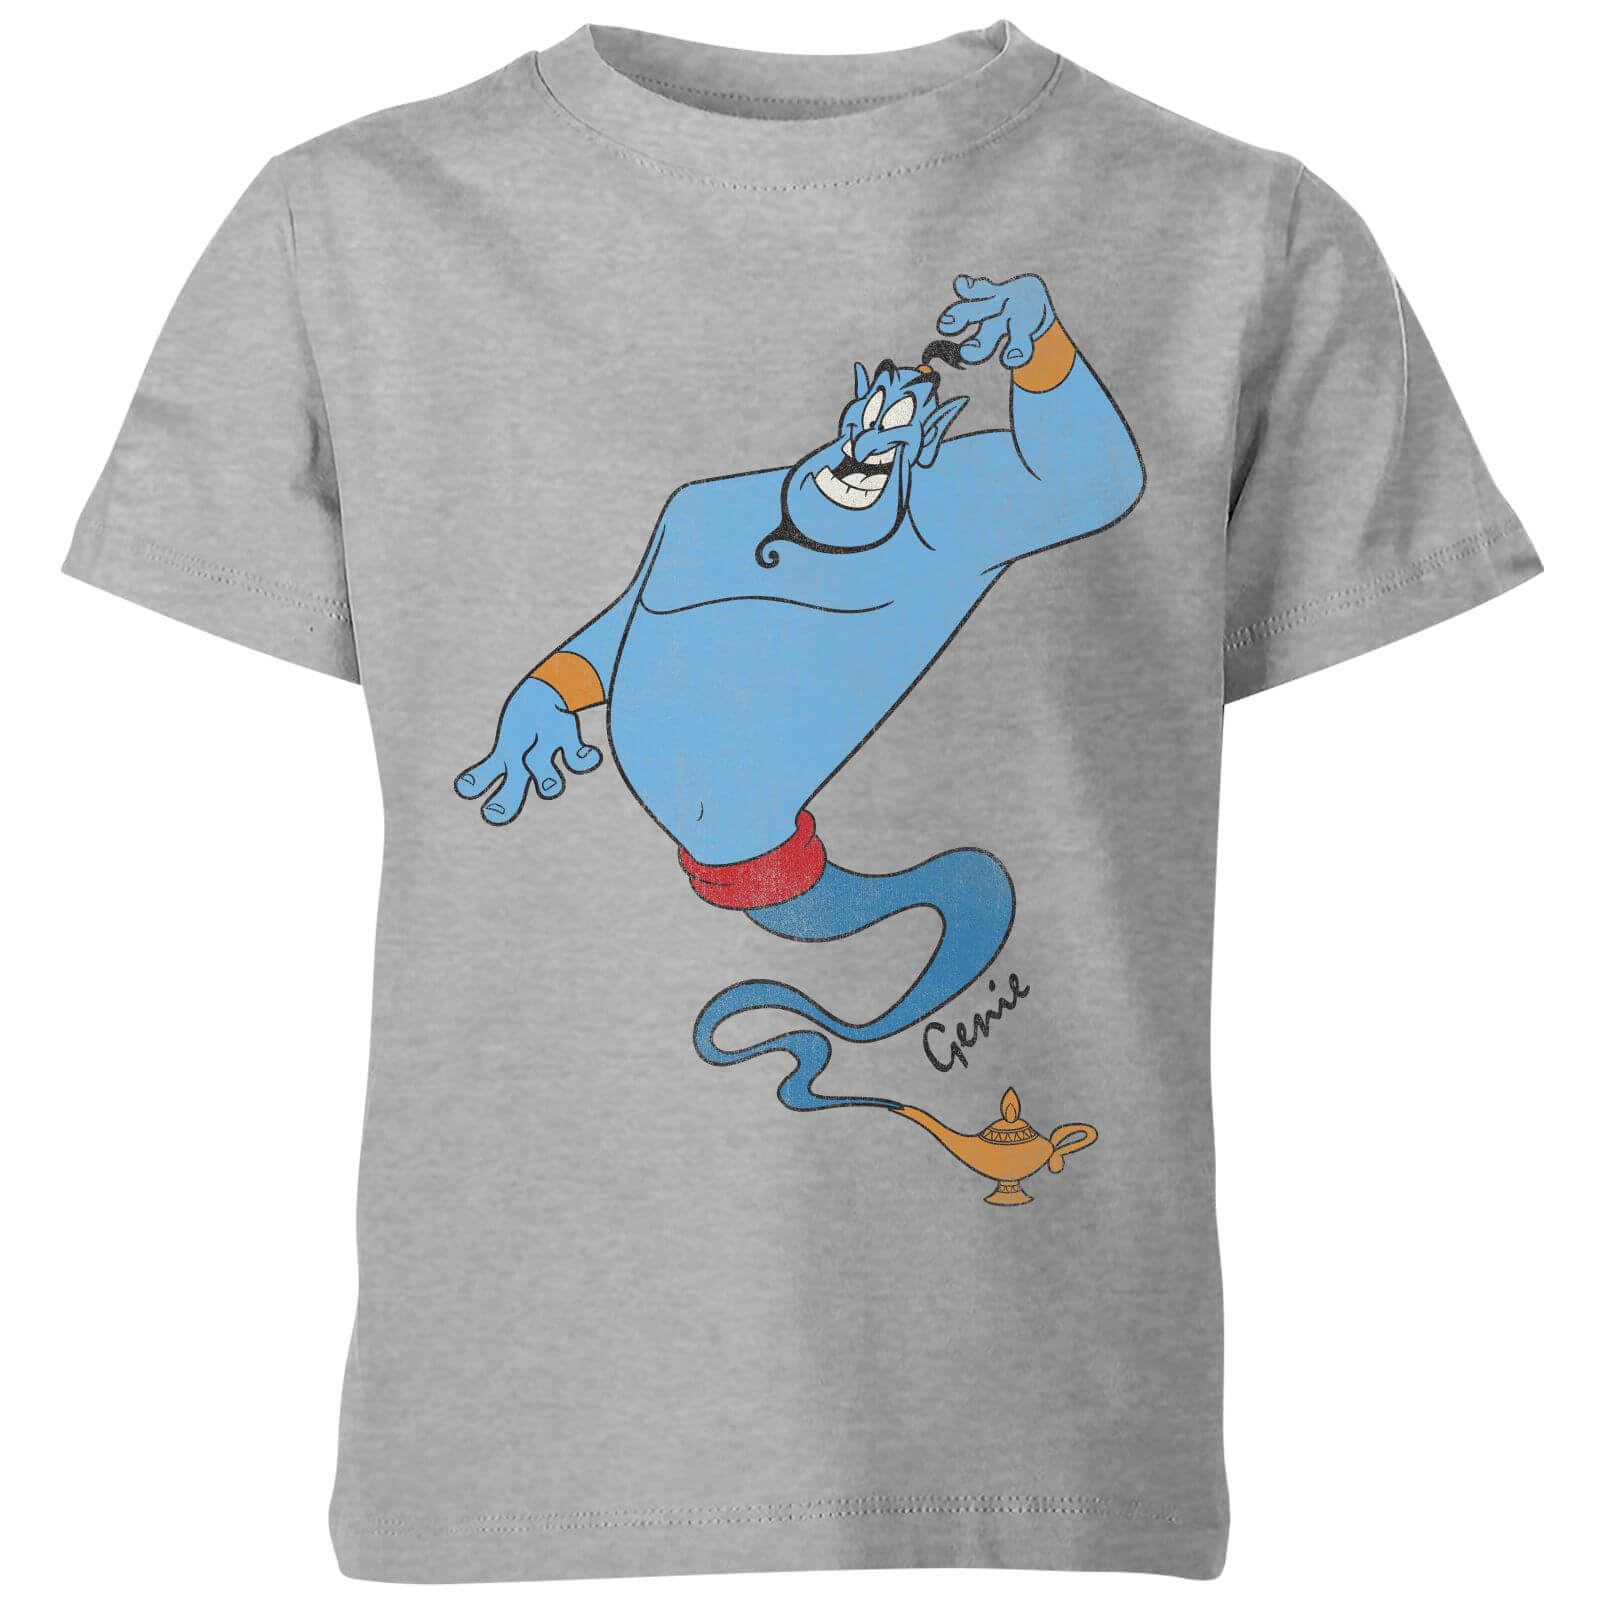 Disney Aladdin Genie Classic Kids' T-Shirt - Grey - 3-4 Years